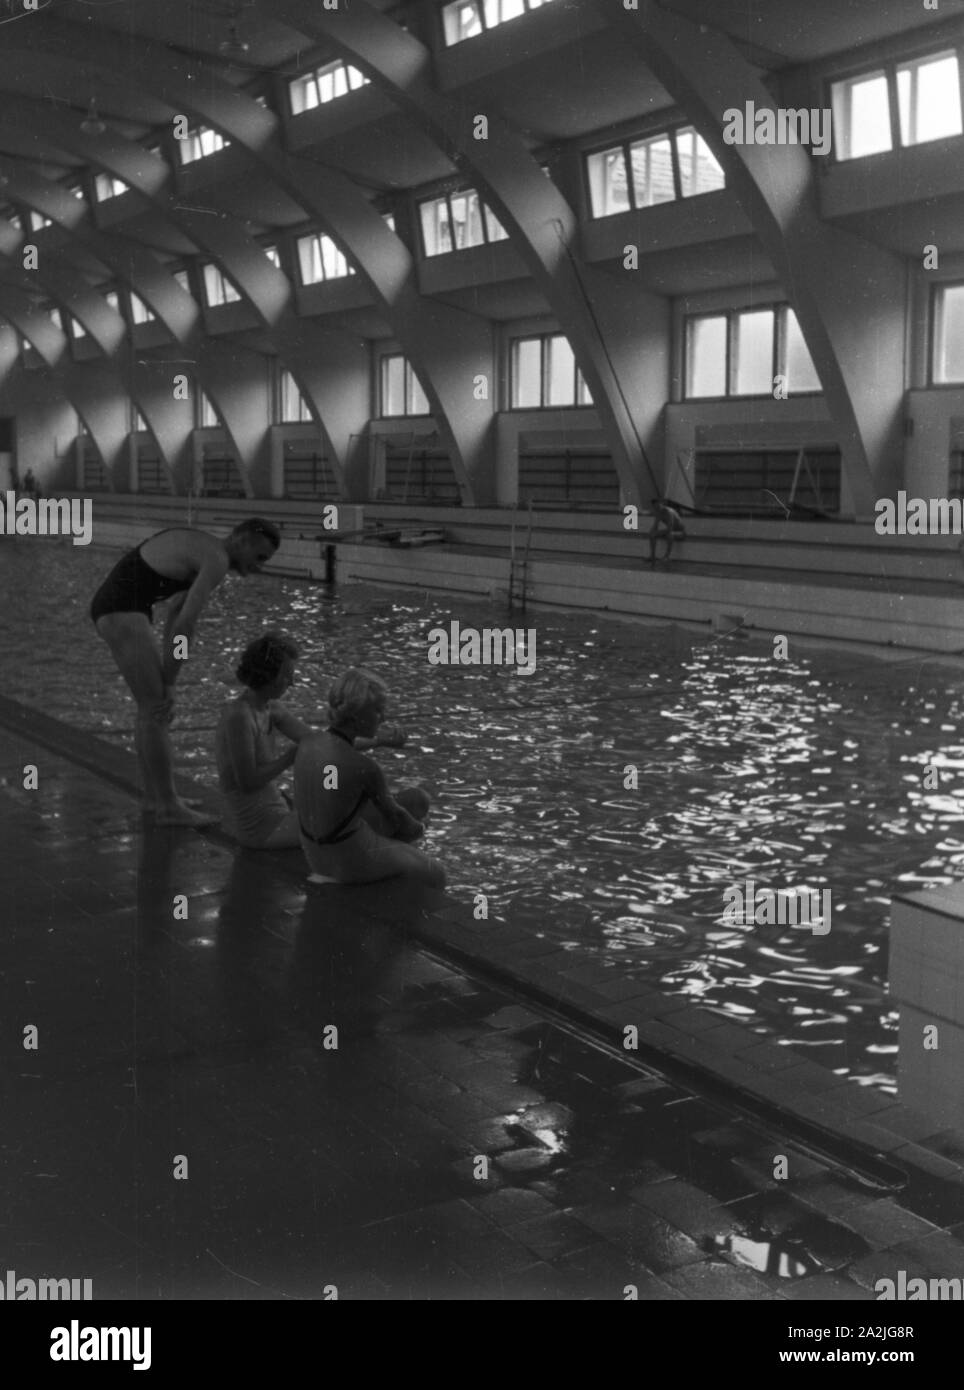 Ein Ausflug in das historische Hallenbad Heslach, Deutsches Reich 1930er Jahre. A trip to the historic indoor swimming pool in Heslach, Germany 1930s. Stock Photo